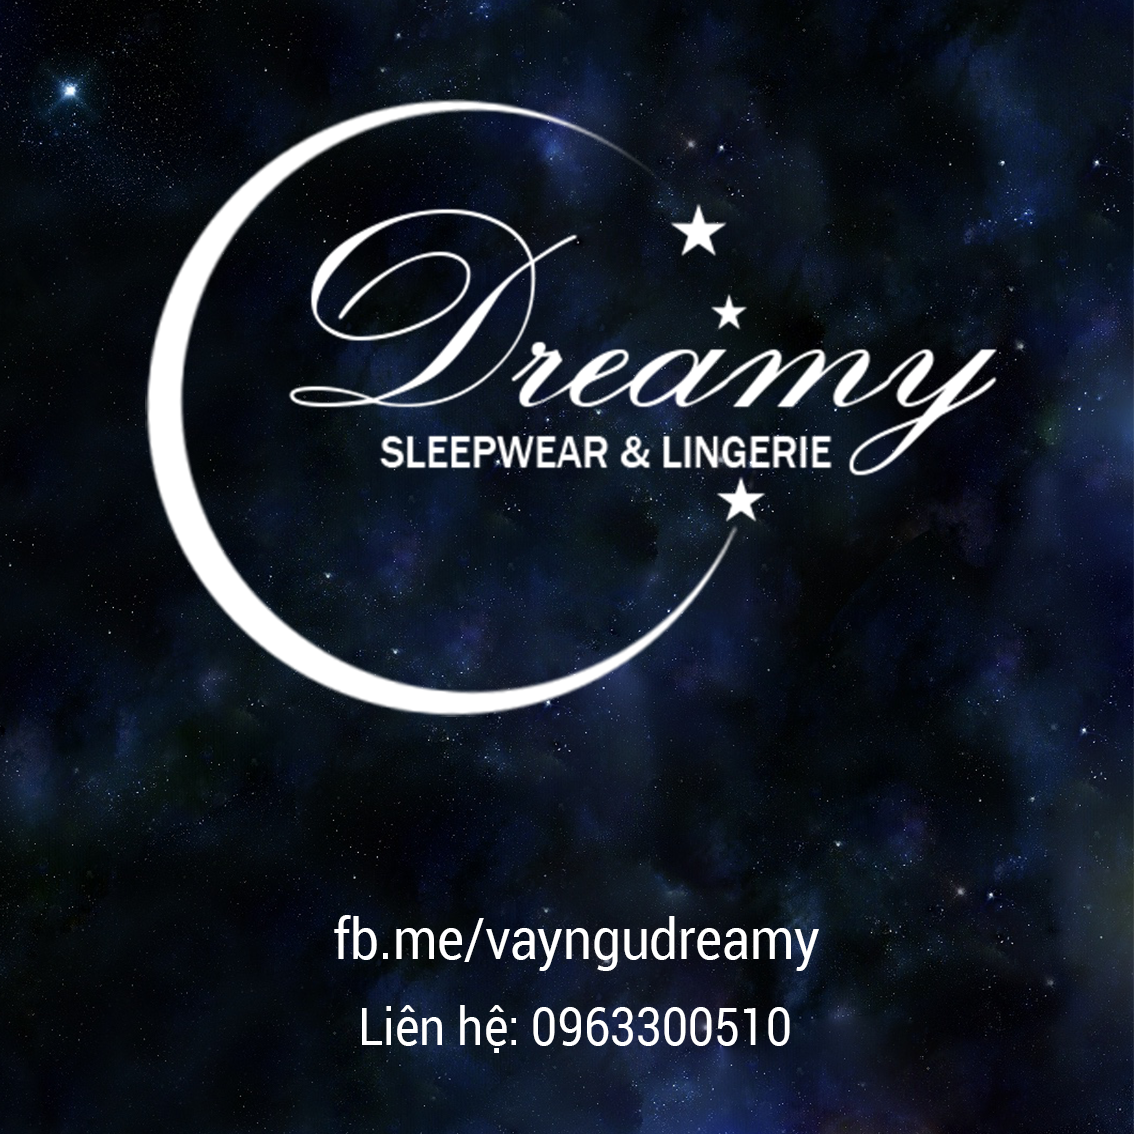 Dreamy SLEEPWEAR & LINGERIE